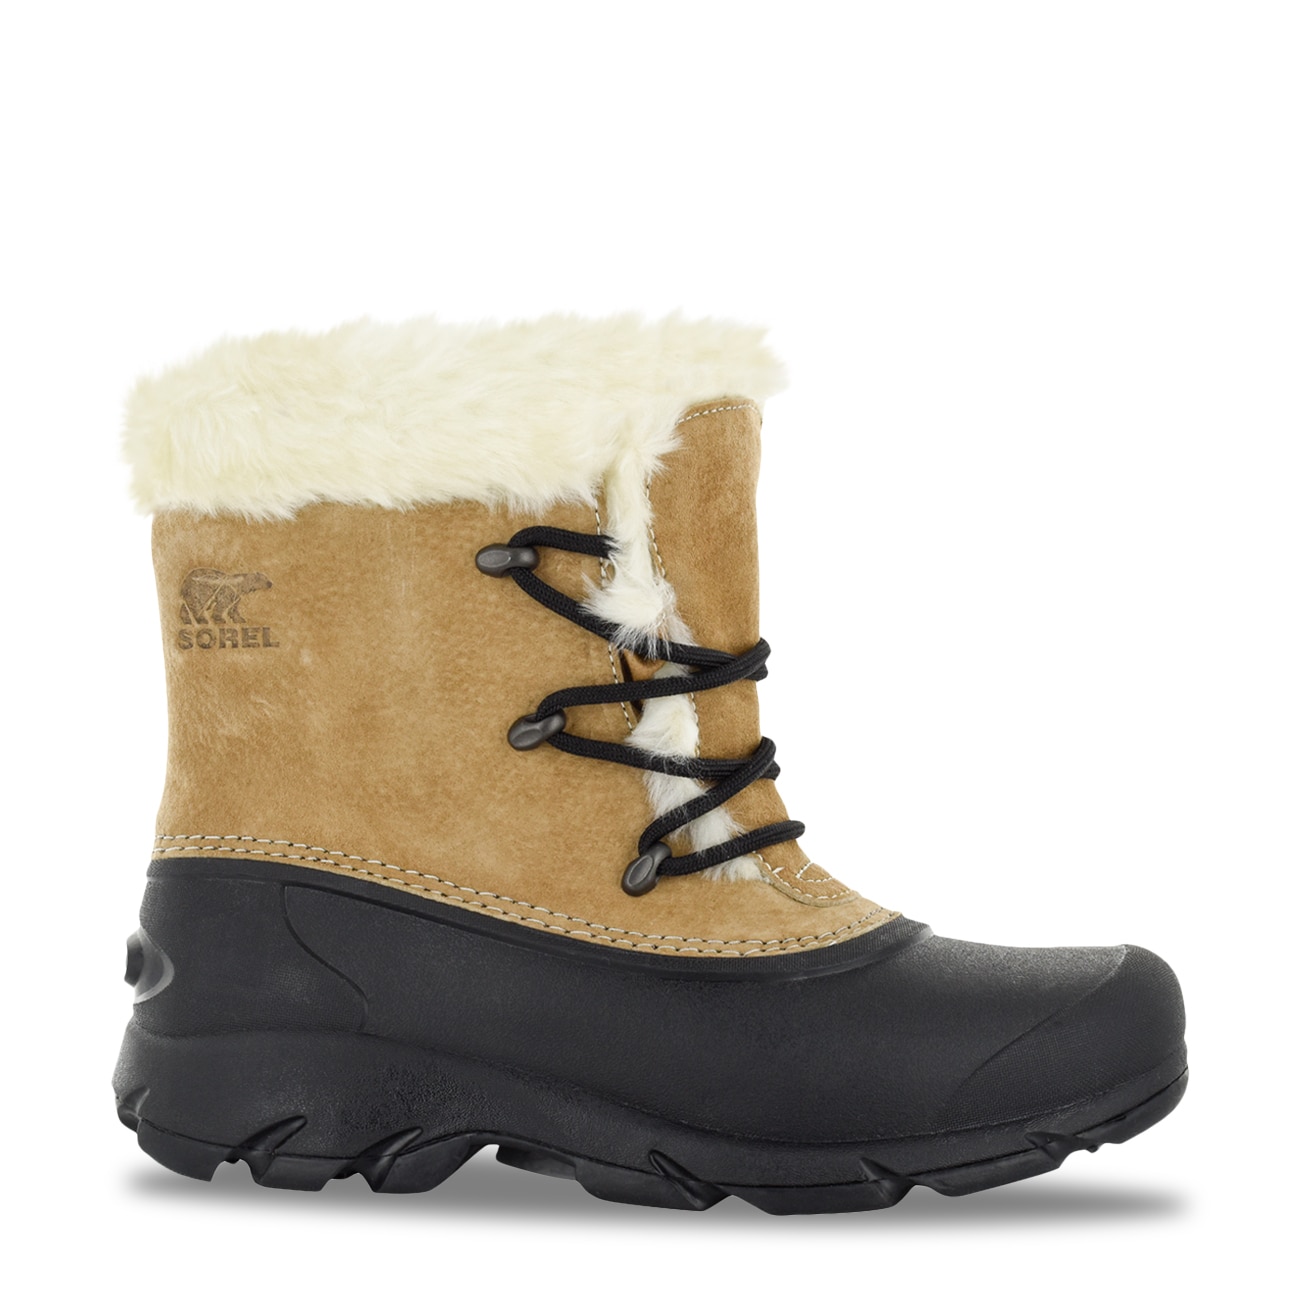 Sorel Women's Snow Angel Waterproof Winter Boot | The Shoe Company